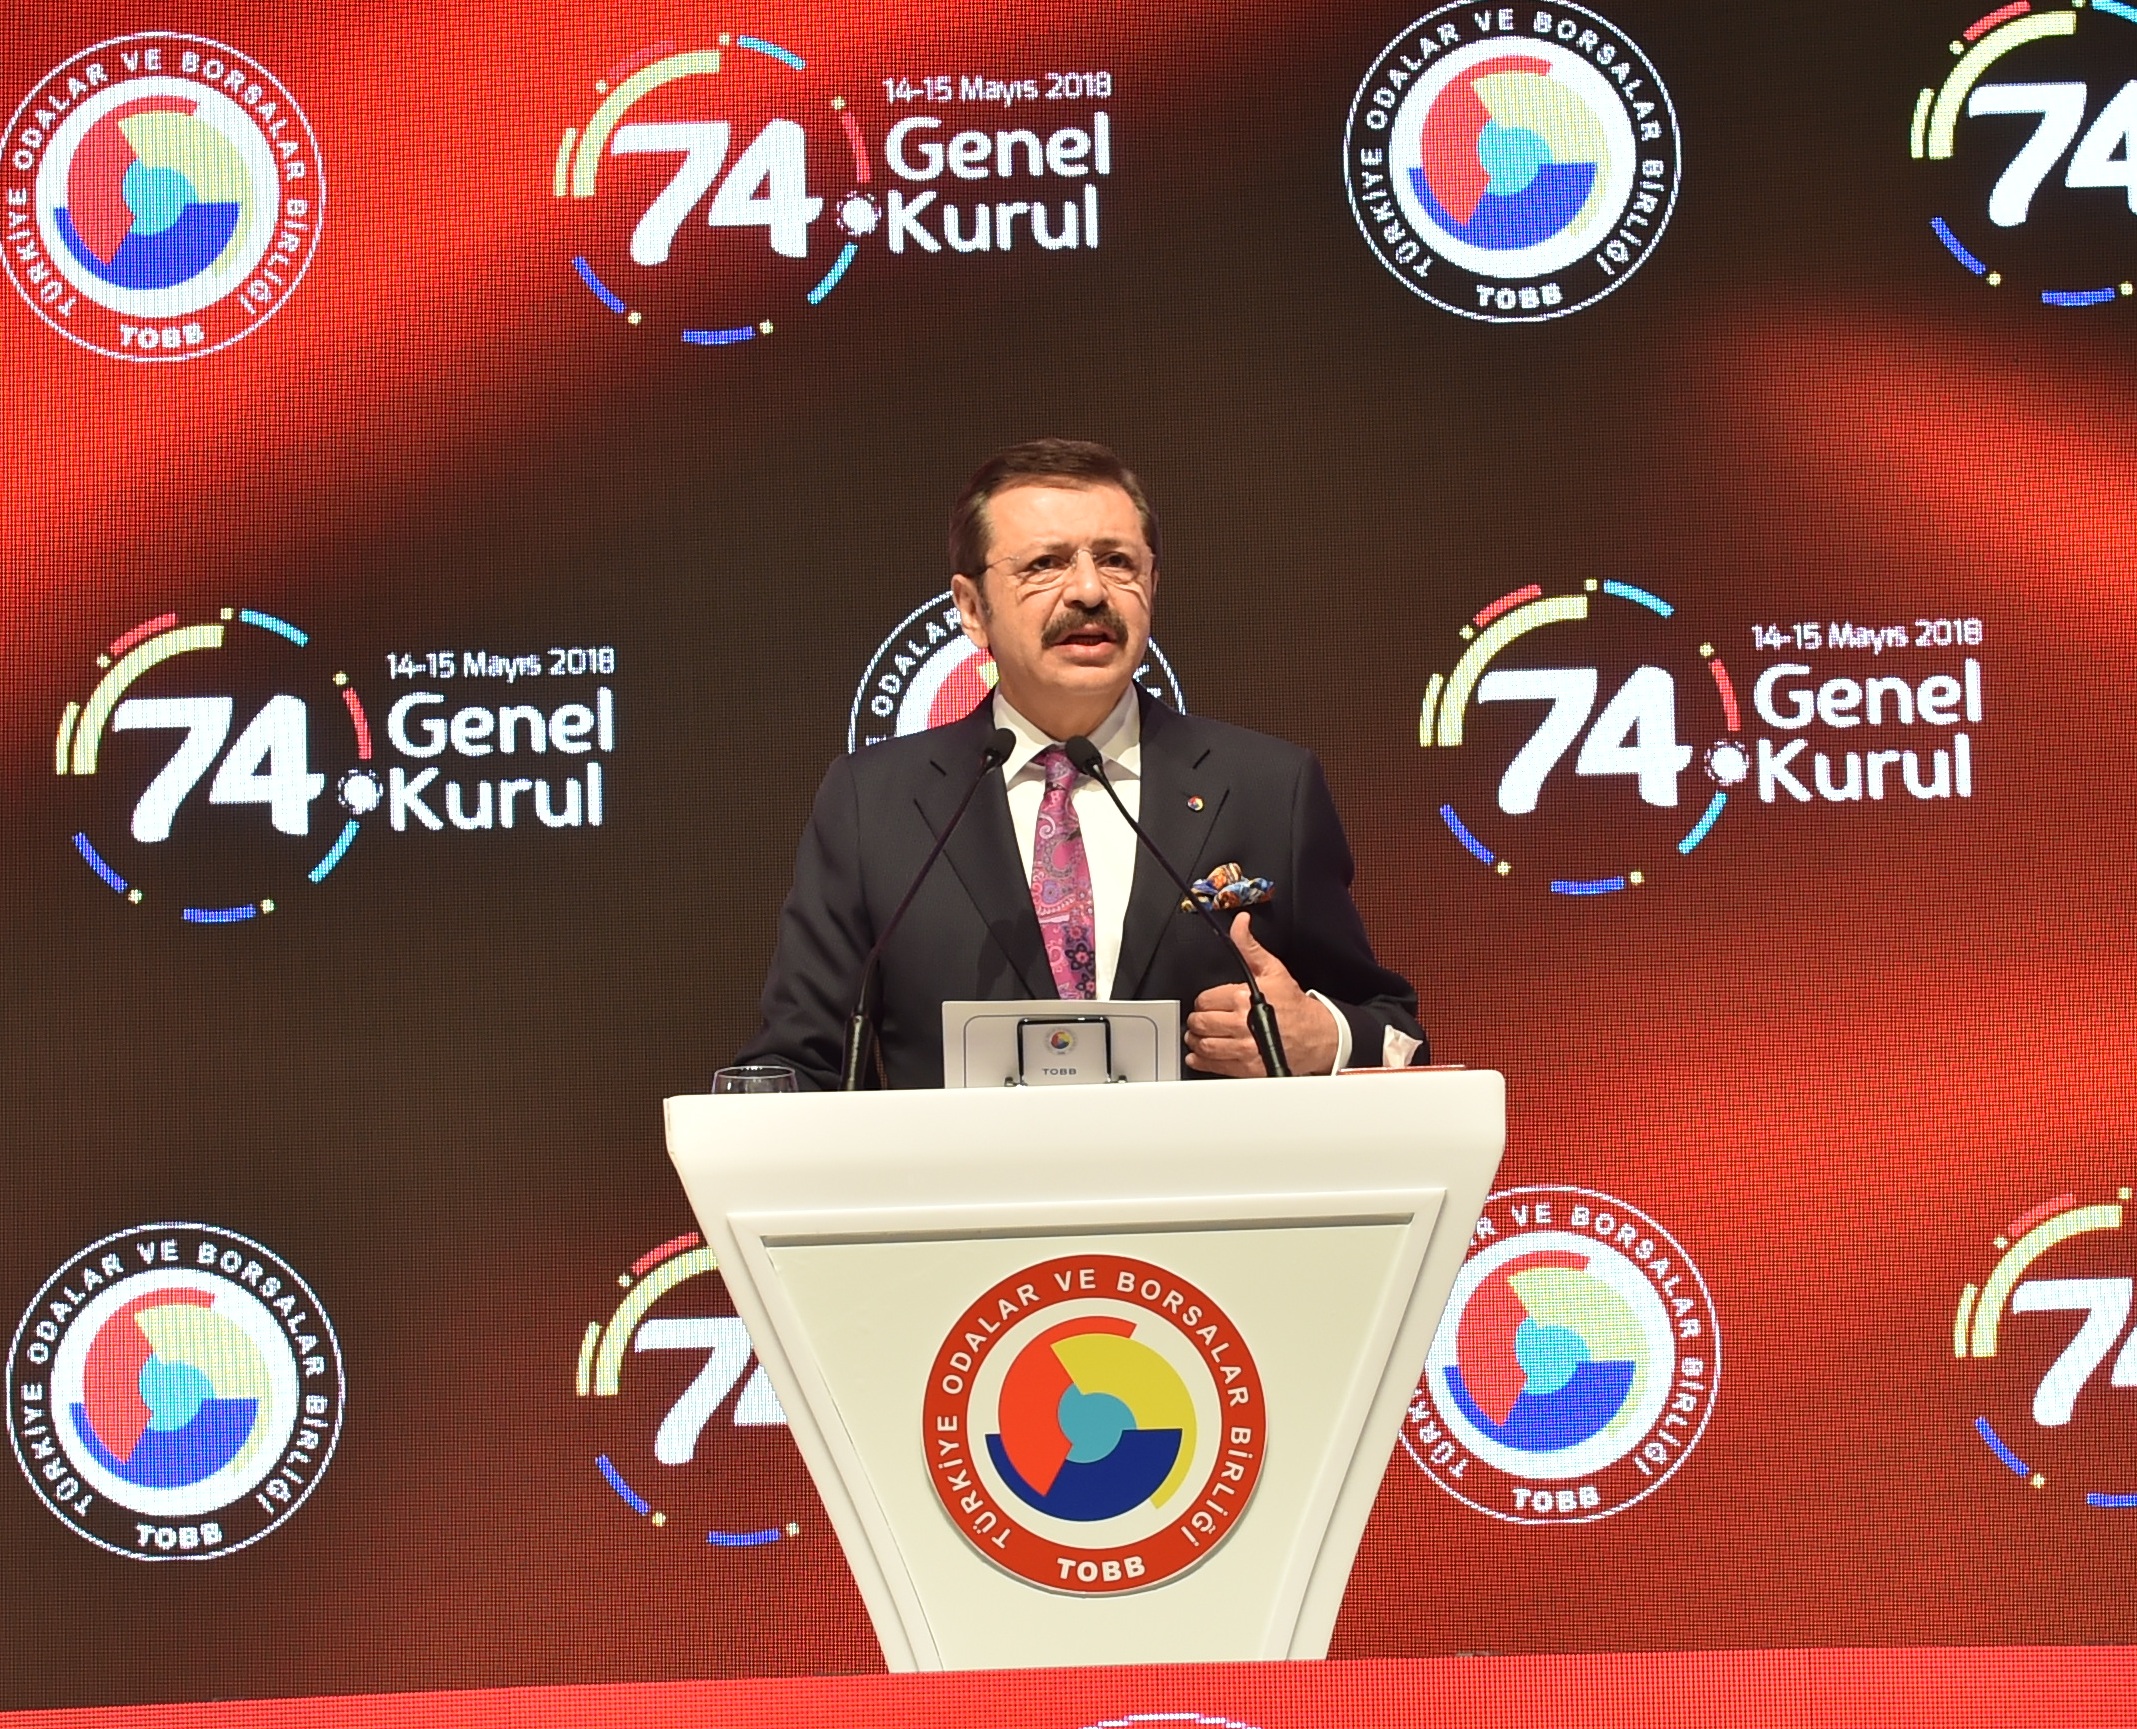 Türkiye Odalar Borsalar Birliği’nin (TOBB) 74. Genel Kurulu TOBB Ekonomisine katılım gerçekleştirildi.